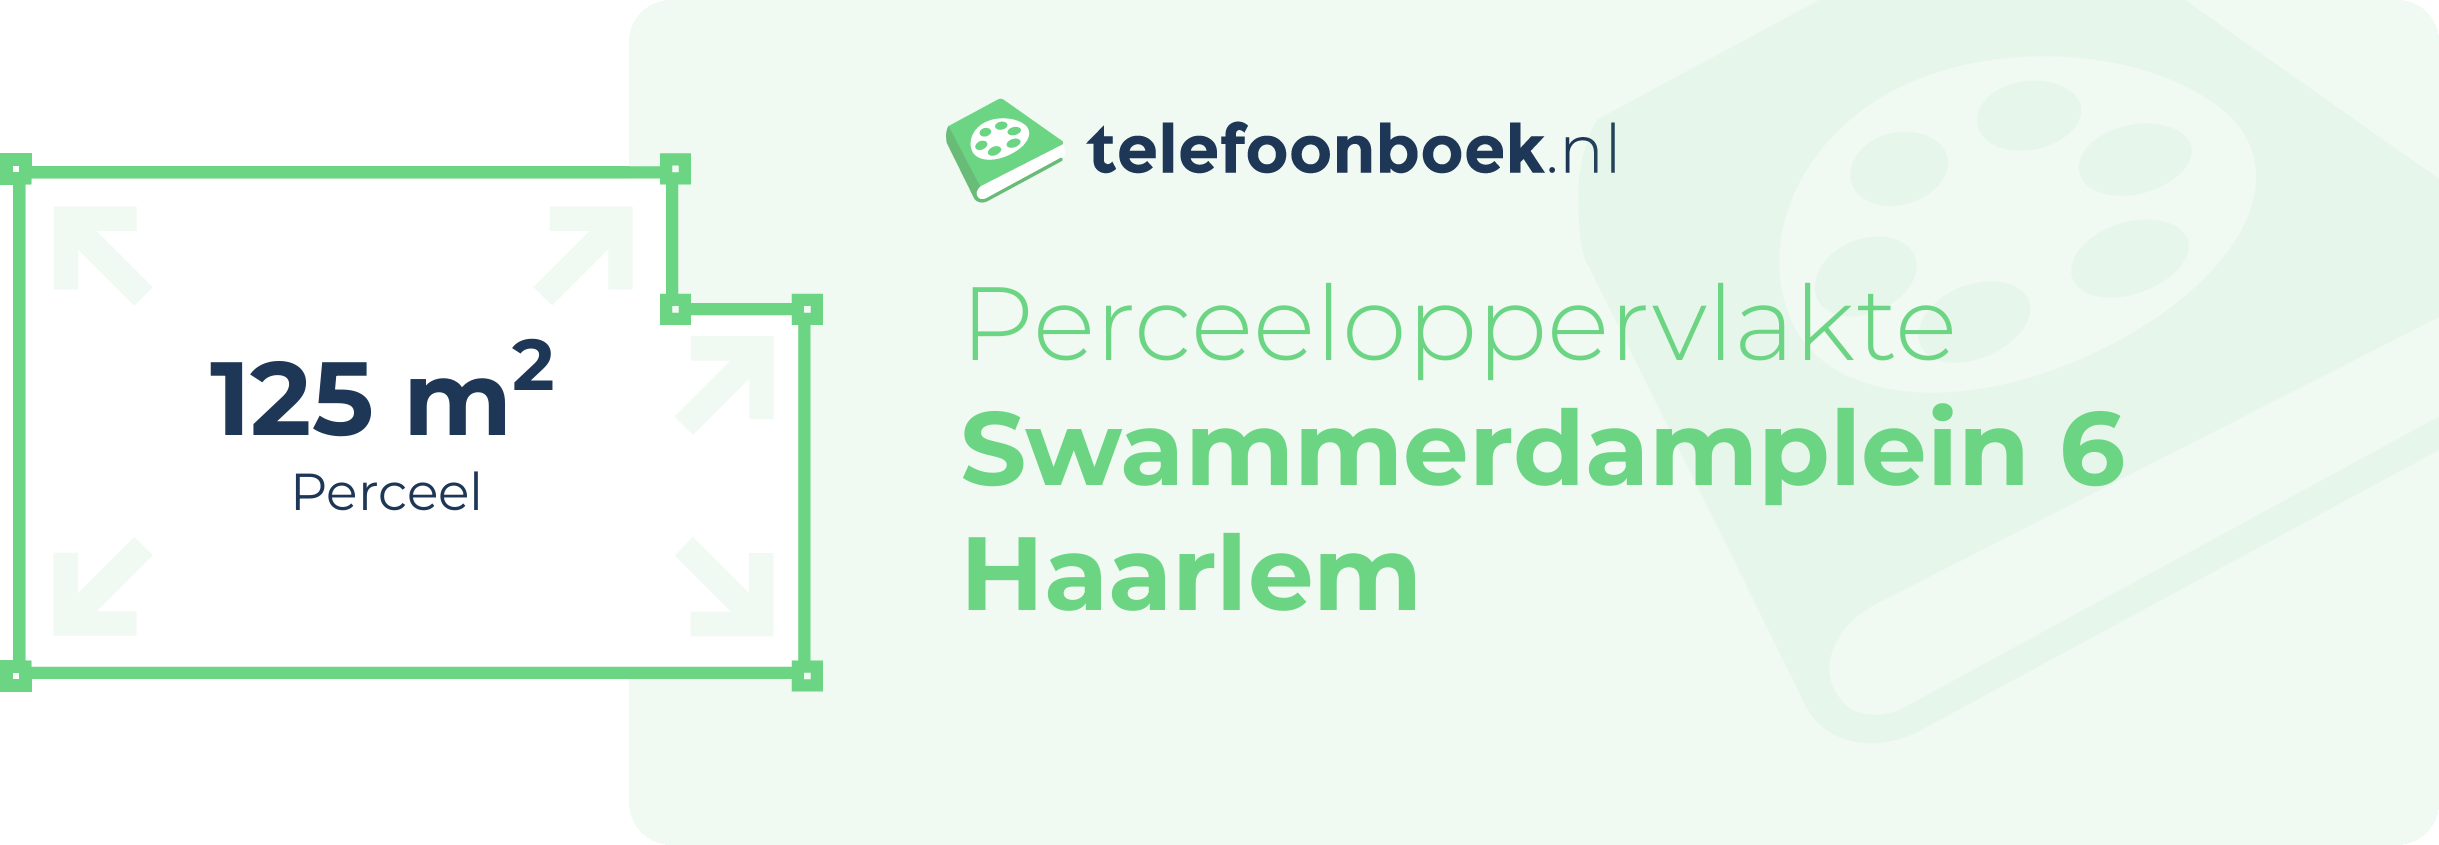 Perceeloppervlakte Swammerdamplein 6 Haarlem